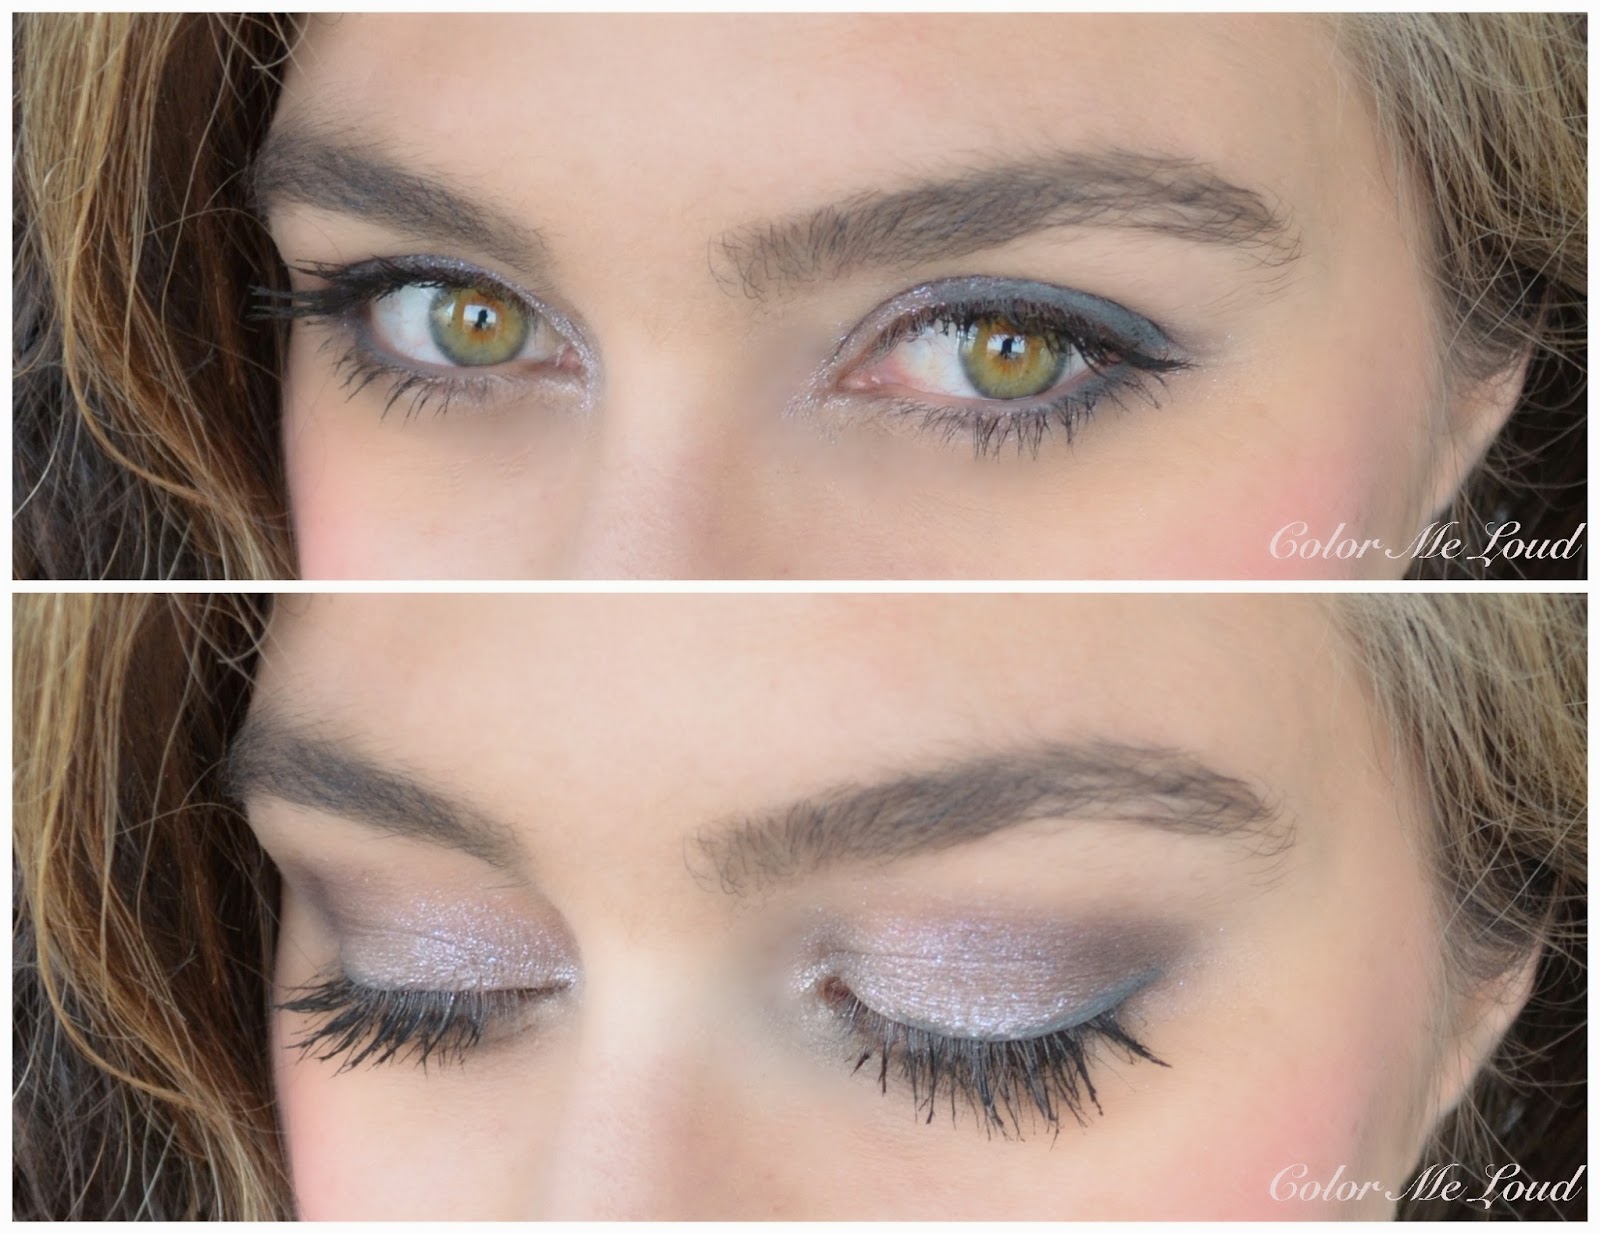 On the eyes: Diorshow Mono #045 Fairy Grey